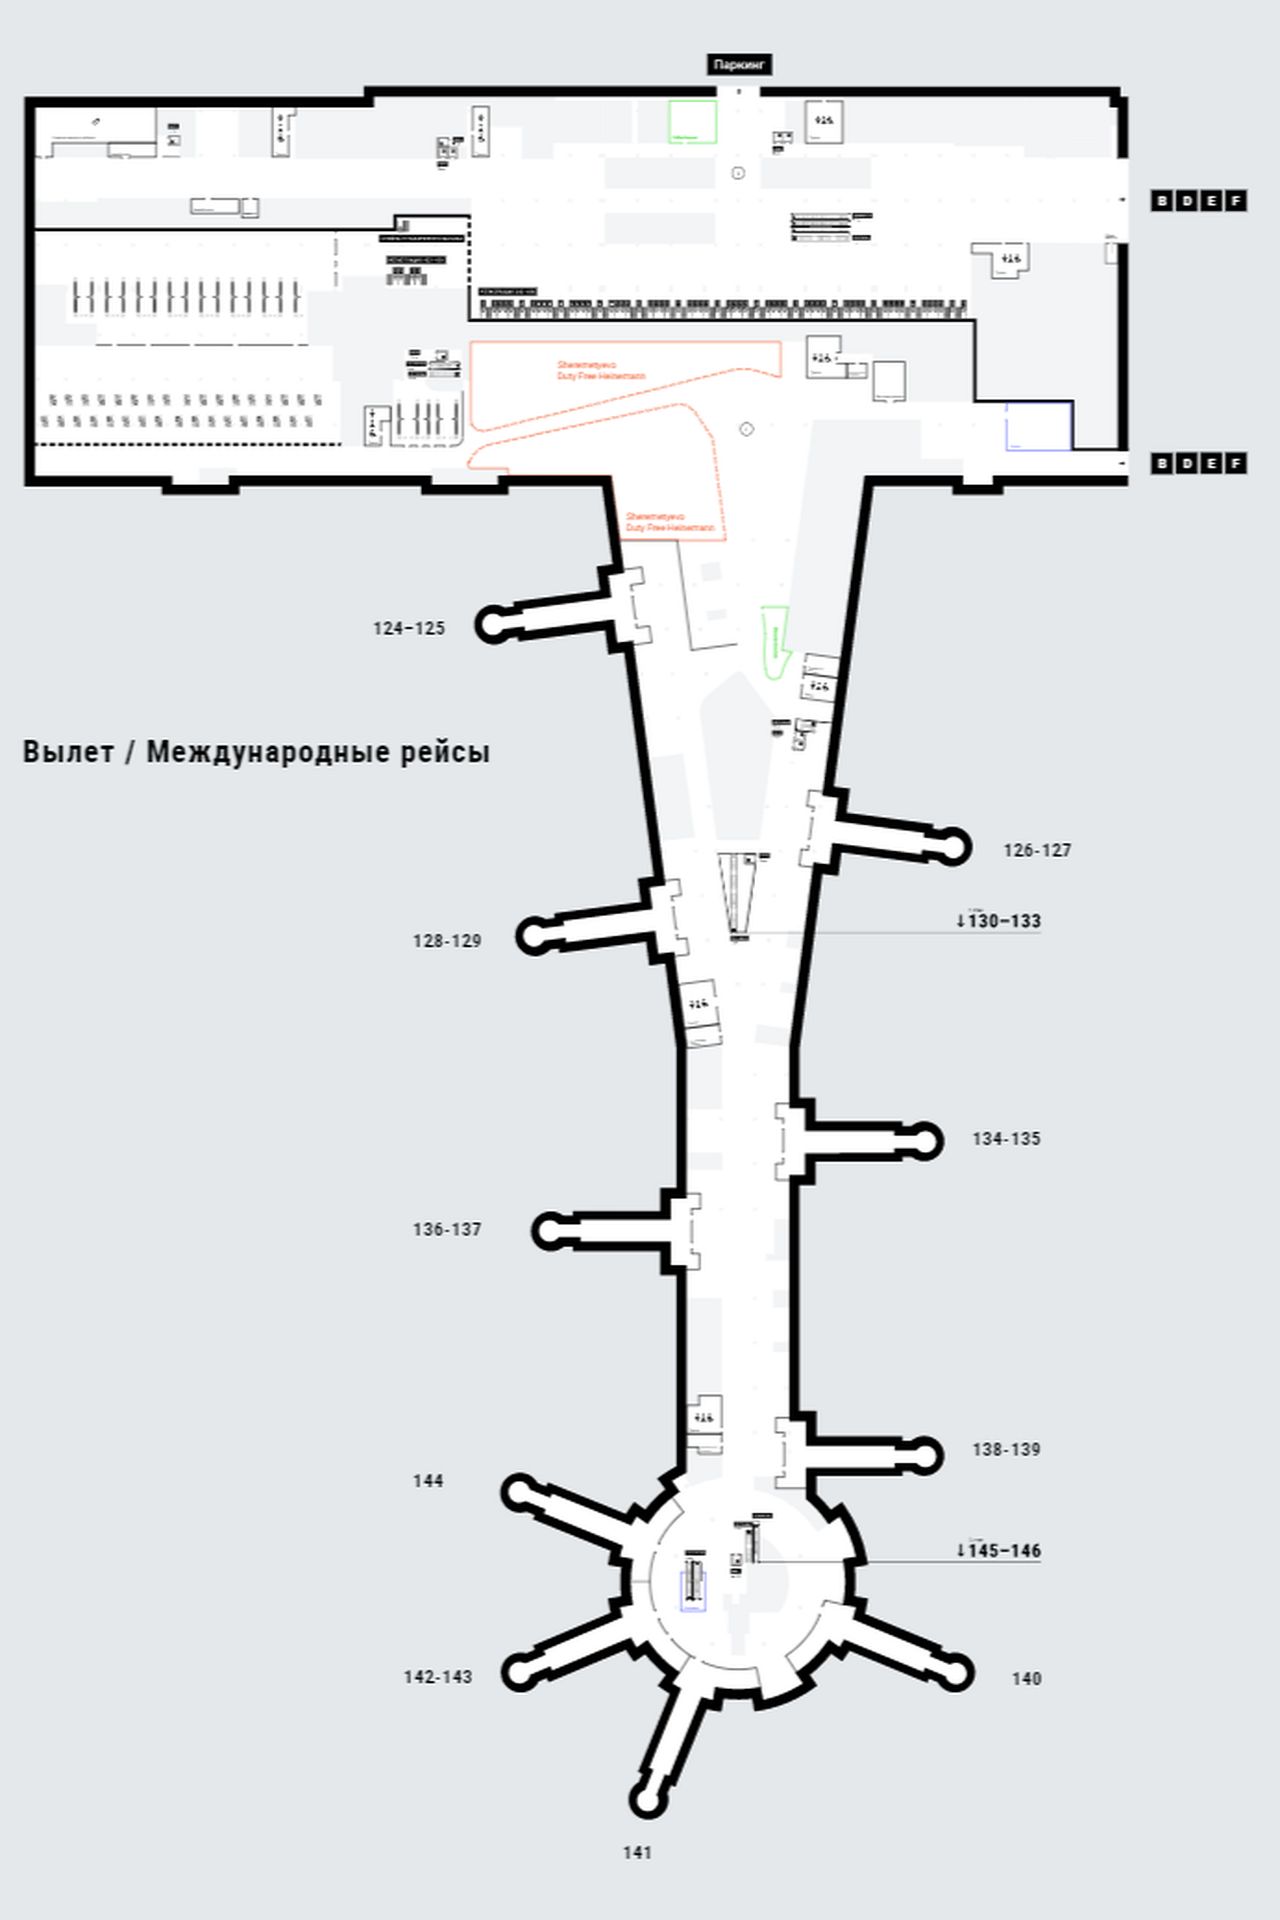 Схема вылета шереметьево. Схема аэропорта Шереметьево с терминалами. Схема выходов на посадку Шереметьево терминал c. Аэропорт Шереметьево терминал b схема. Шереметьево выходы на посадку терминал в.